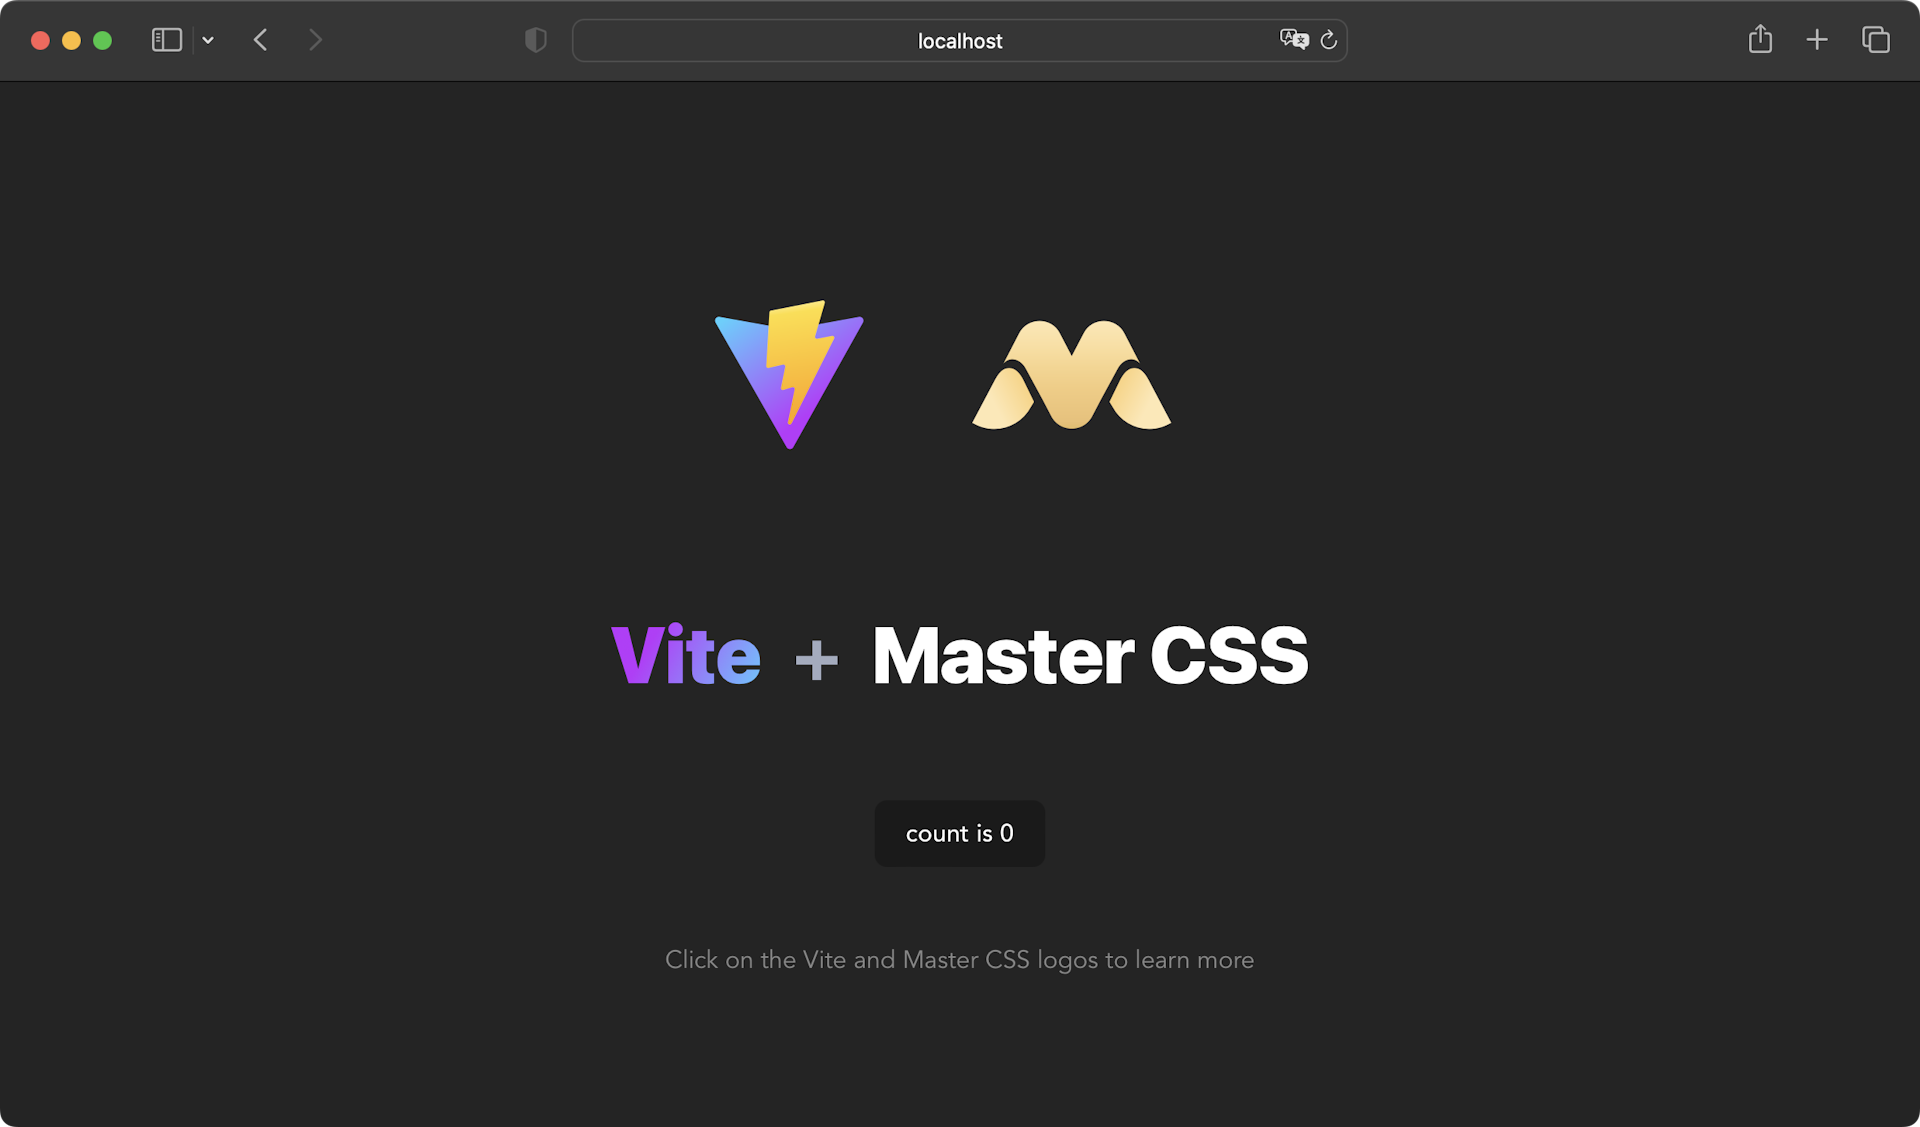 Vite and Master CSS